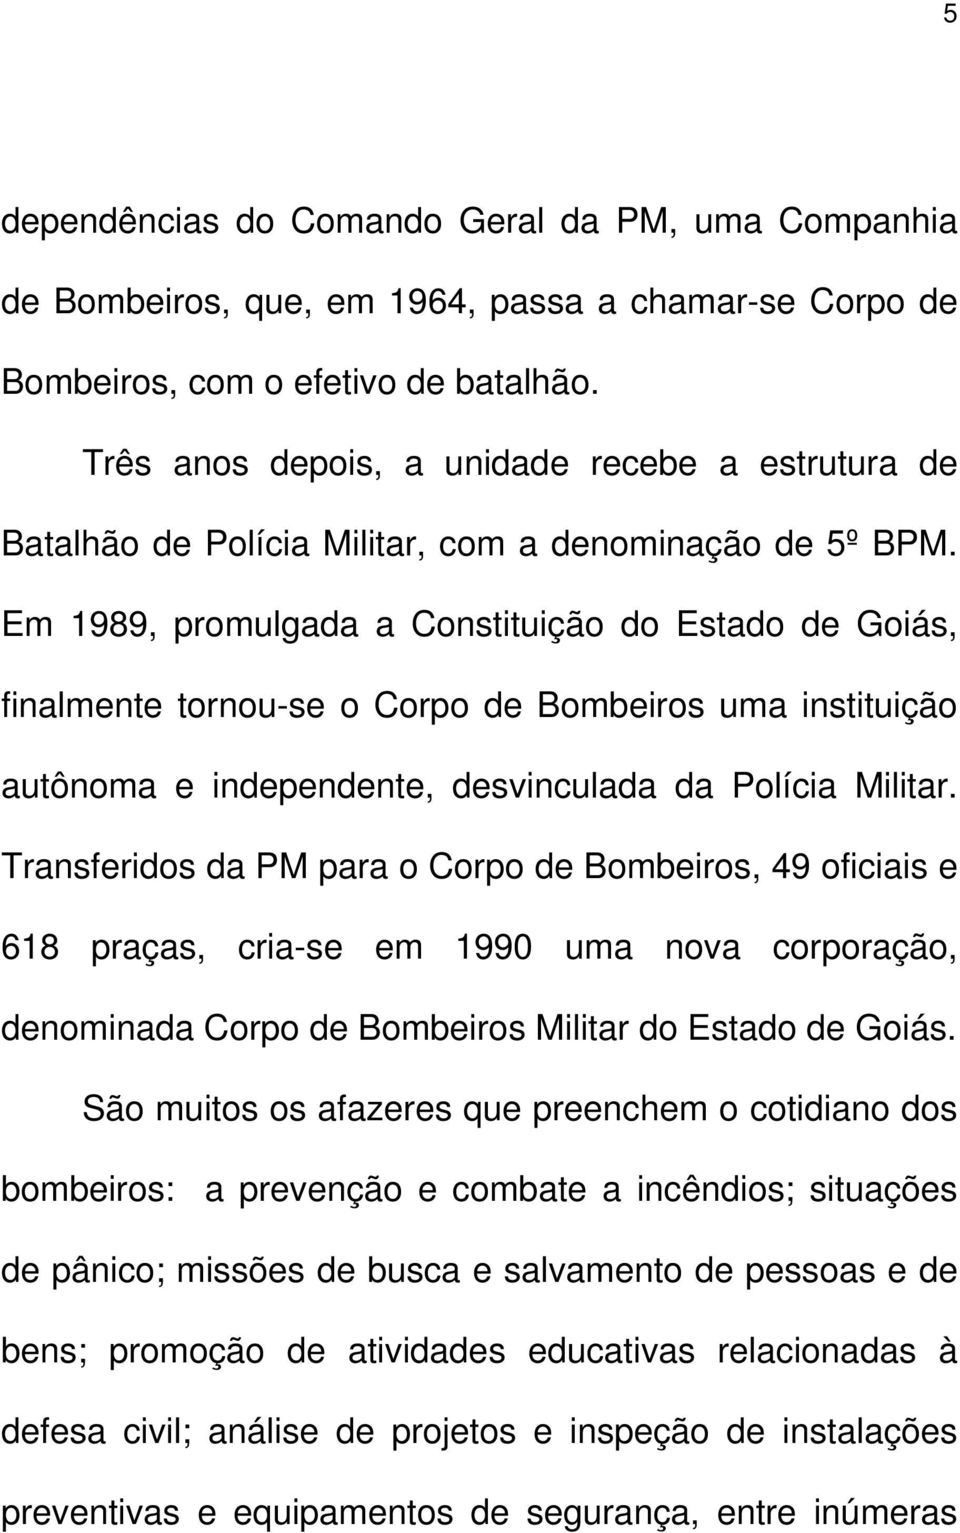 Em 1989, promulgada a Constituição do Estado de Goiás, finalmente tornou-se o Corpo de Bombeiros uma instituição autônoma e independente, desvinculada da Polícia Militar.